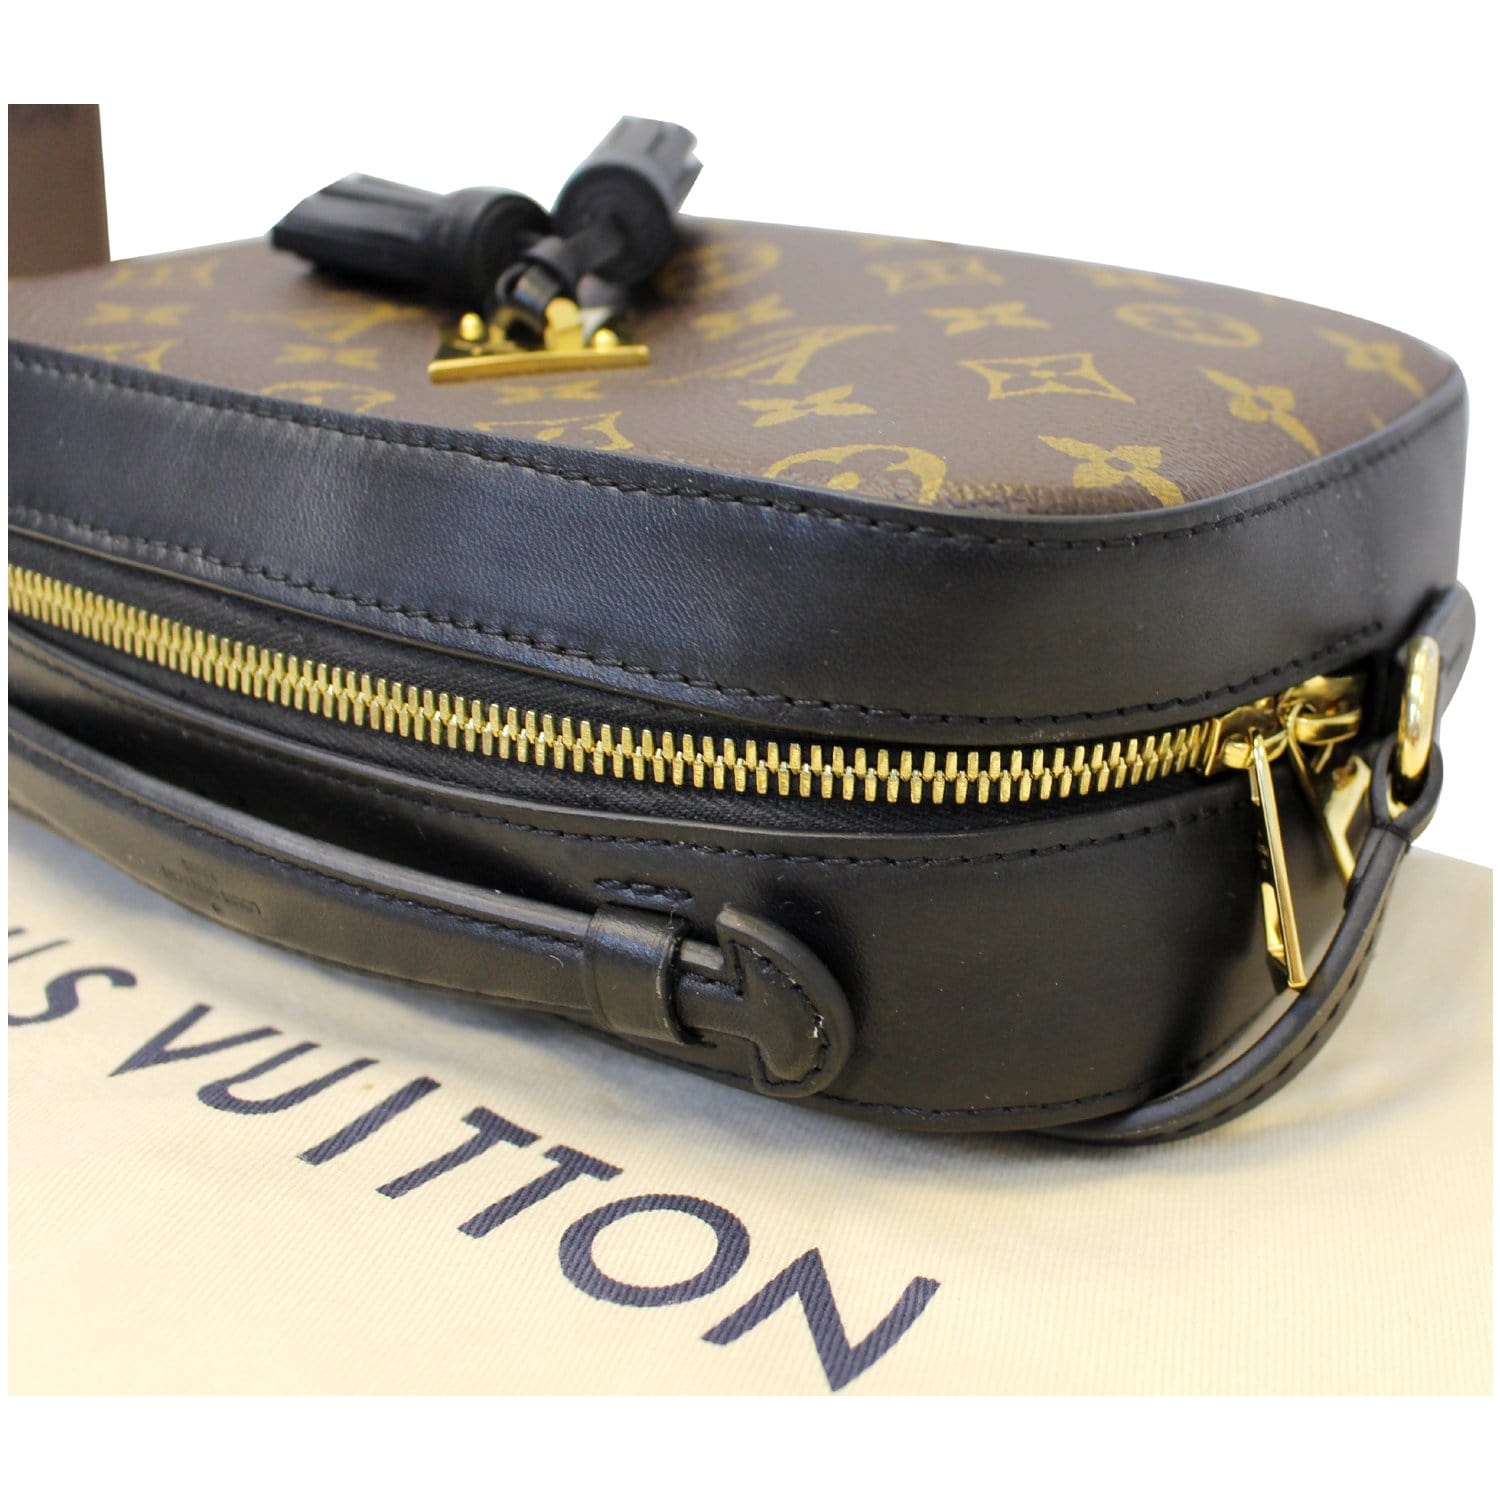 LOUIS VUITTON Monogram Empreinte Saintonges Shoulder Bag Tassel Leather  Noir Black M44593